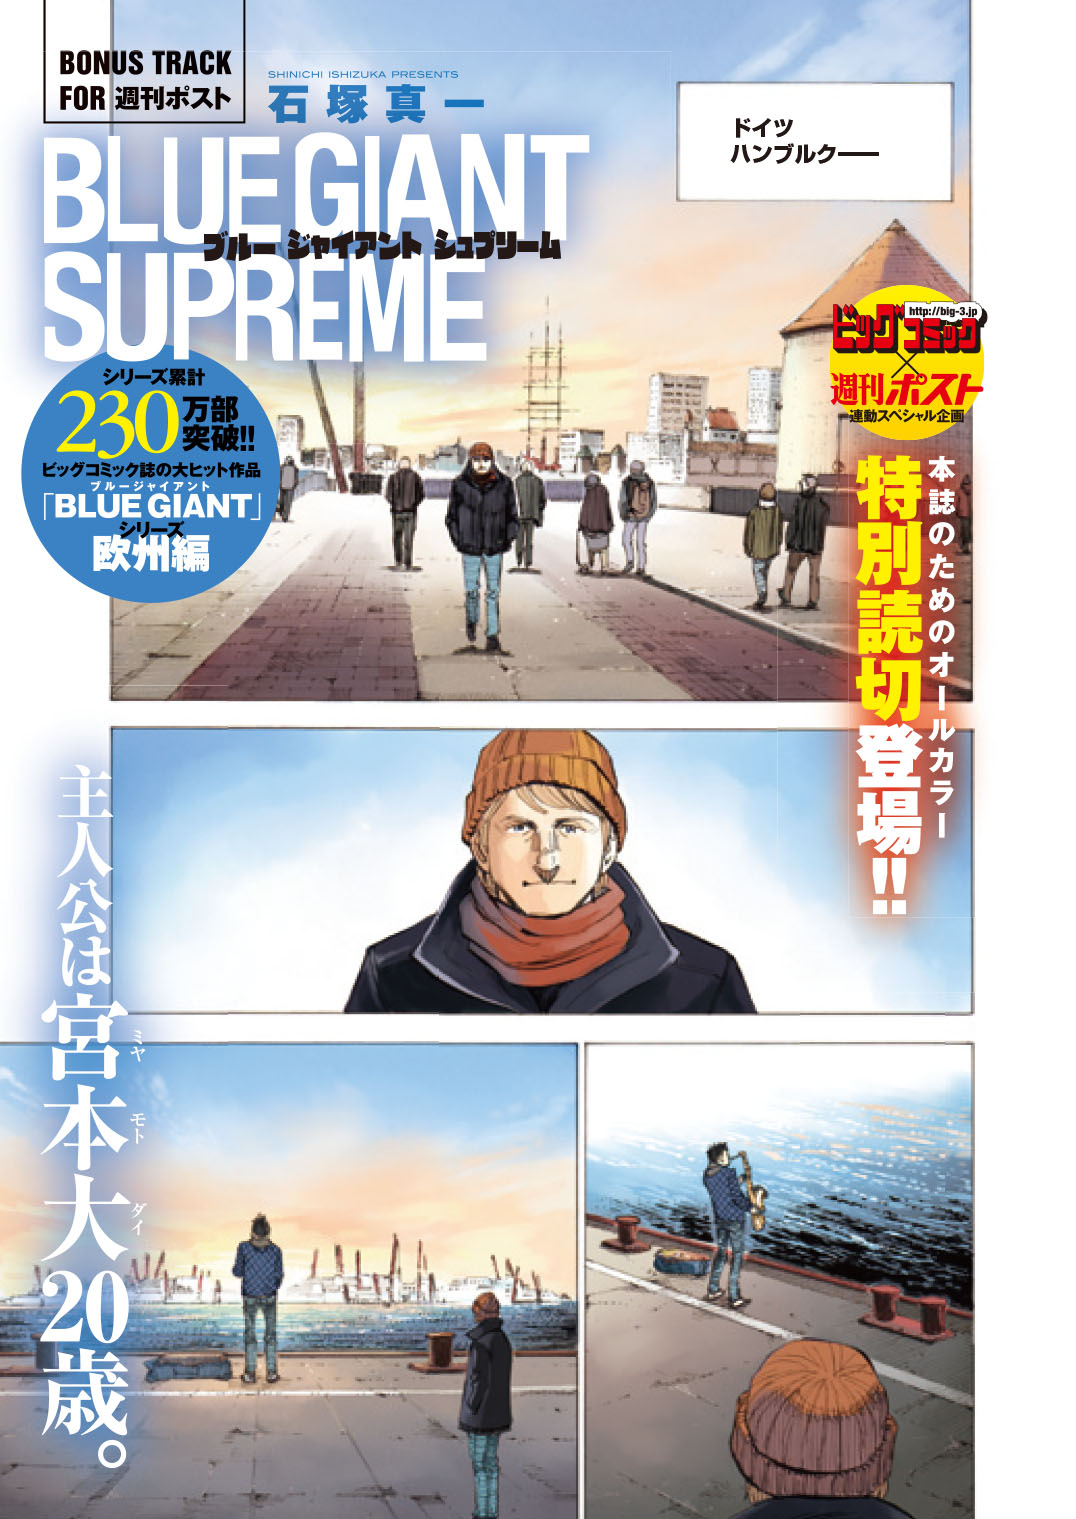 「週刊ポスト」6/2号『BLUE GIANT SUPREME』特集